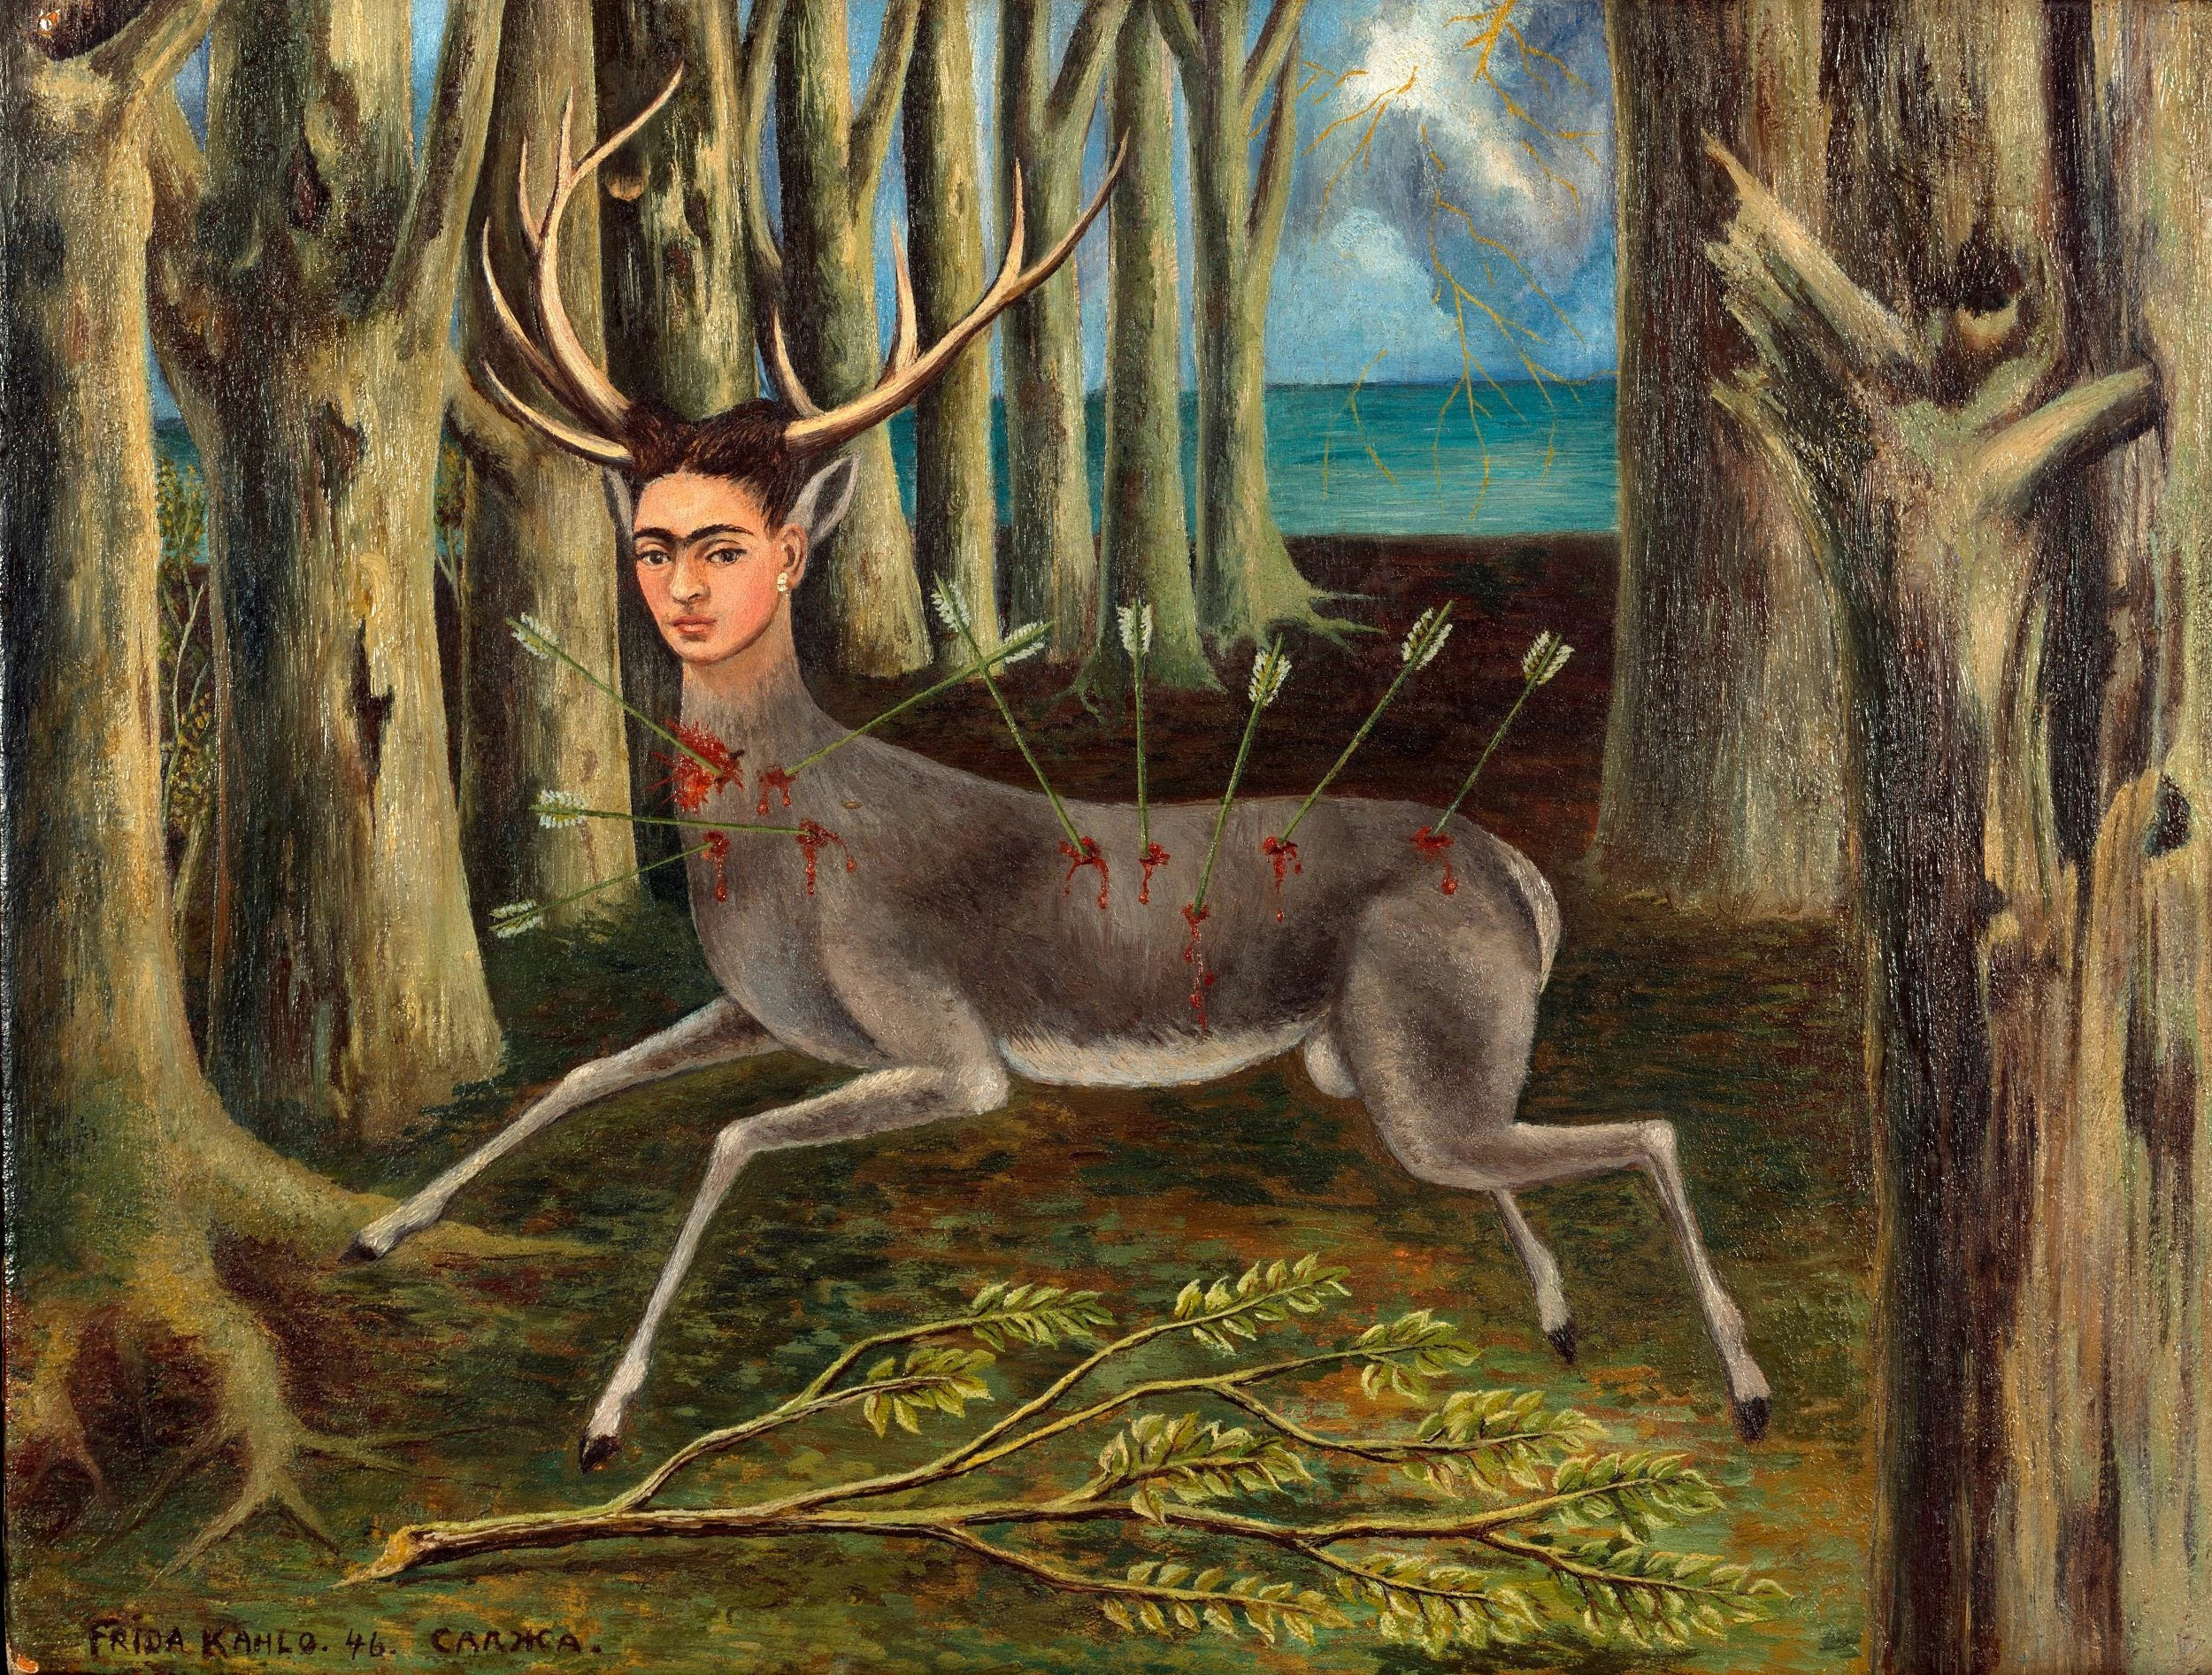 The Wounded Deer, Frida Kahlo